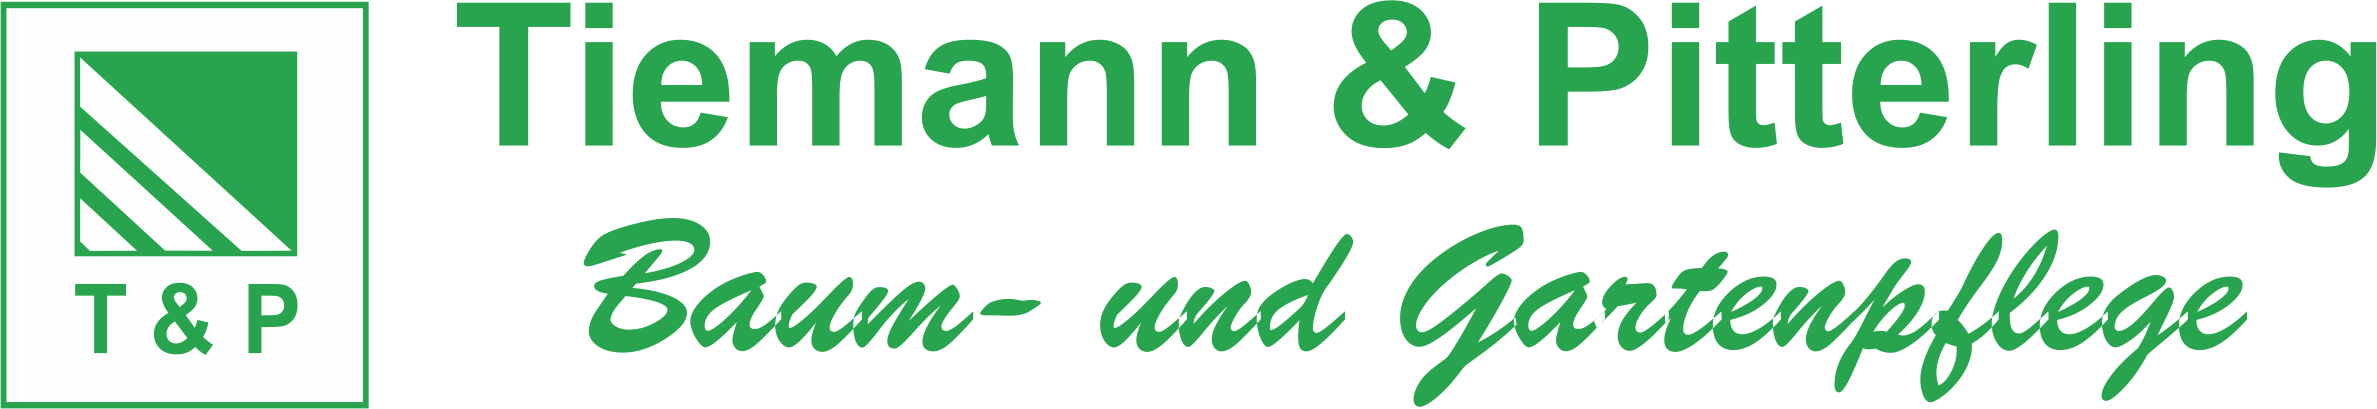 http://baumpflege-magdeburg.de/images/logo.png